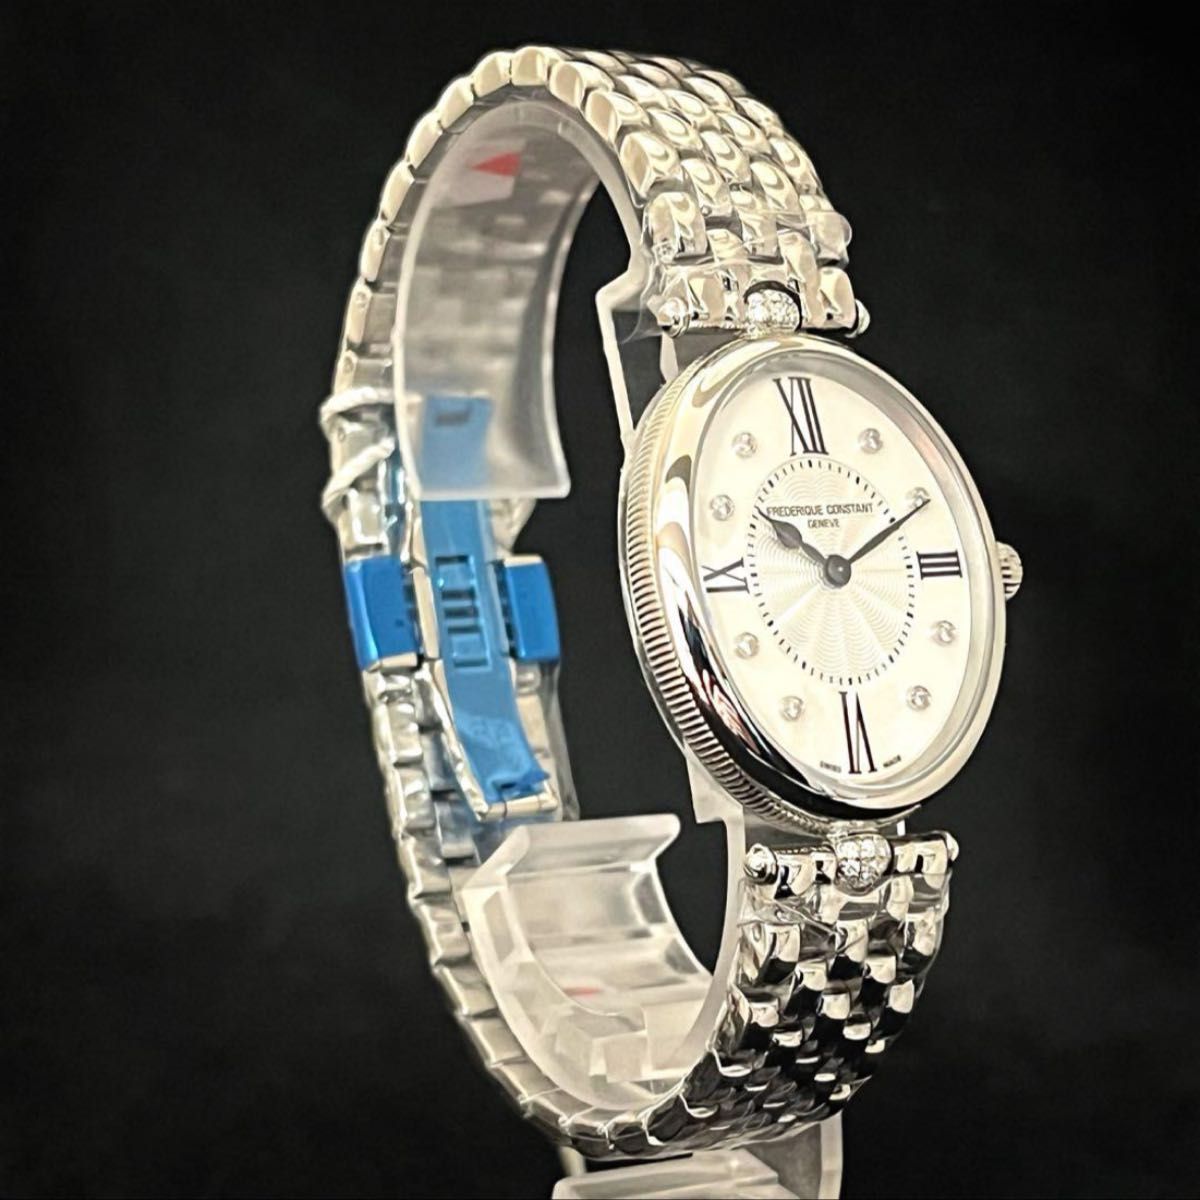 【Frederique Constant】展示品/レディース腕時計/女性用/ダイヤモンド/プレゼントに/フレデリックコンスタント